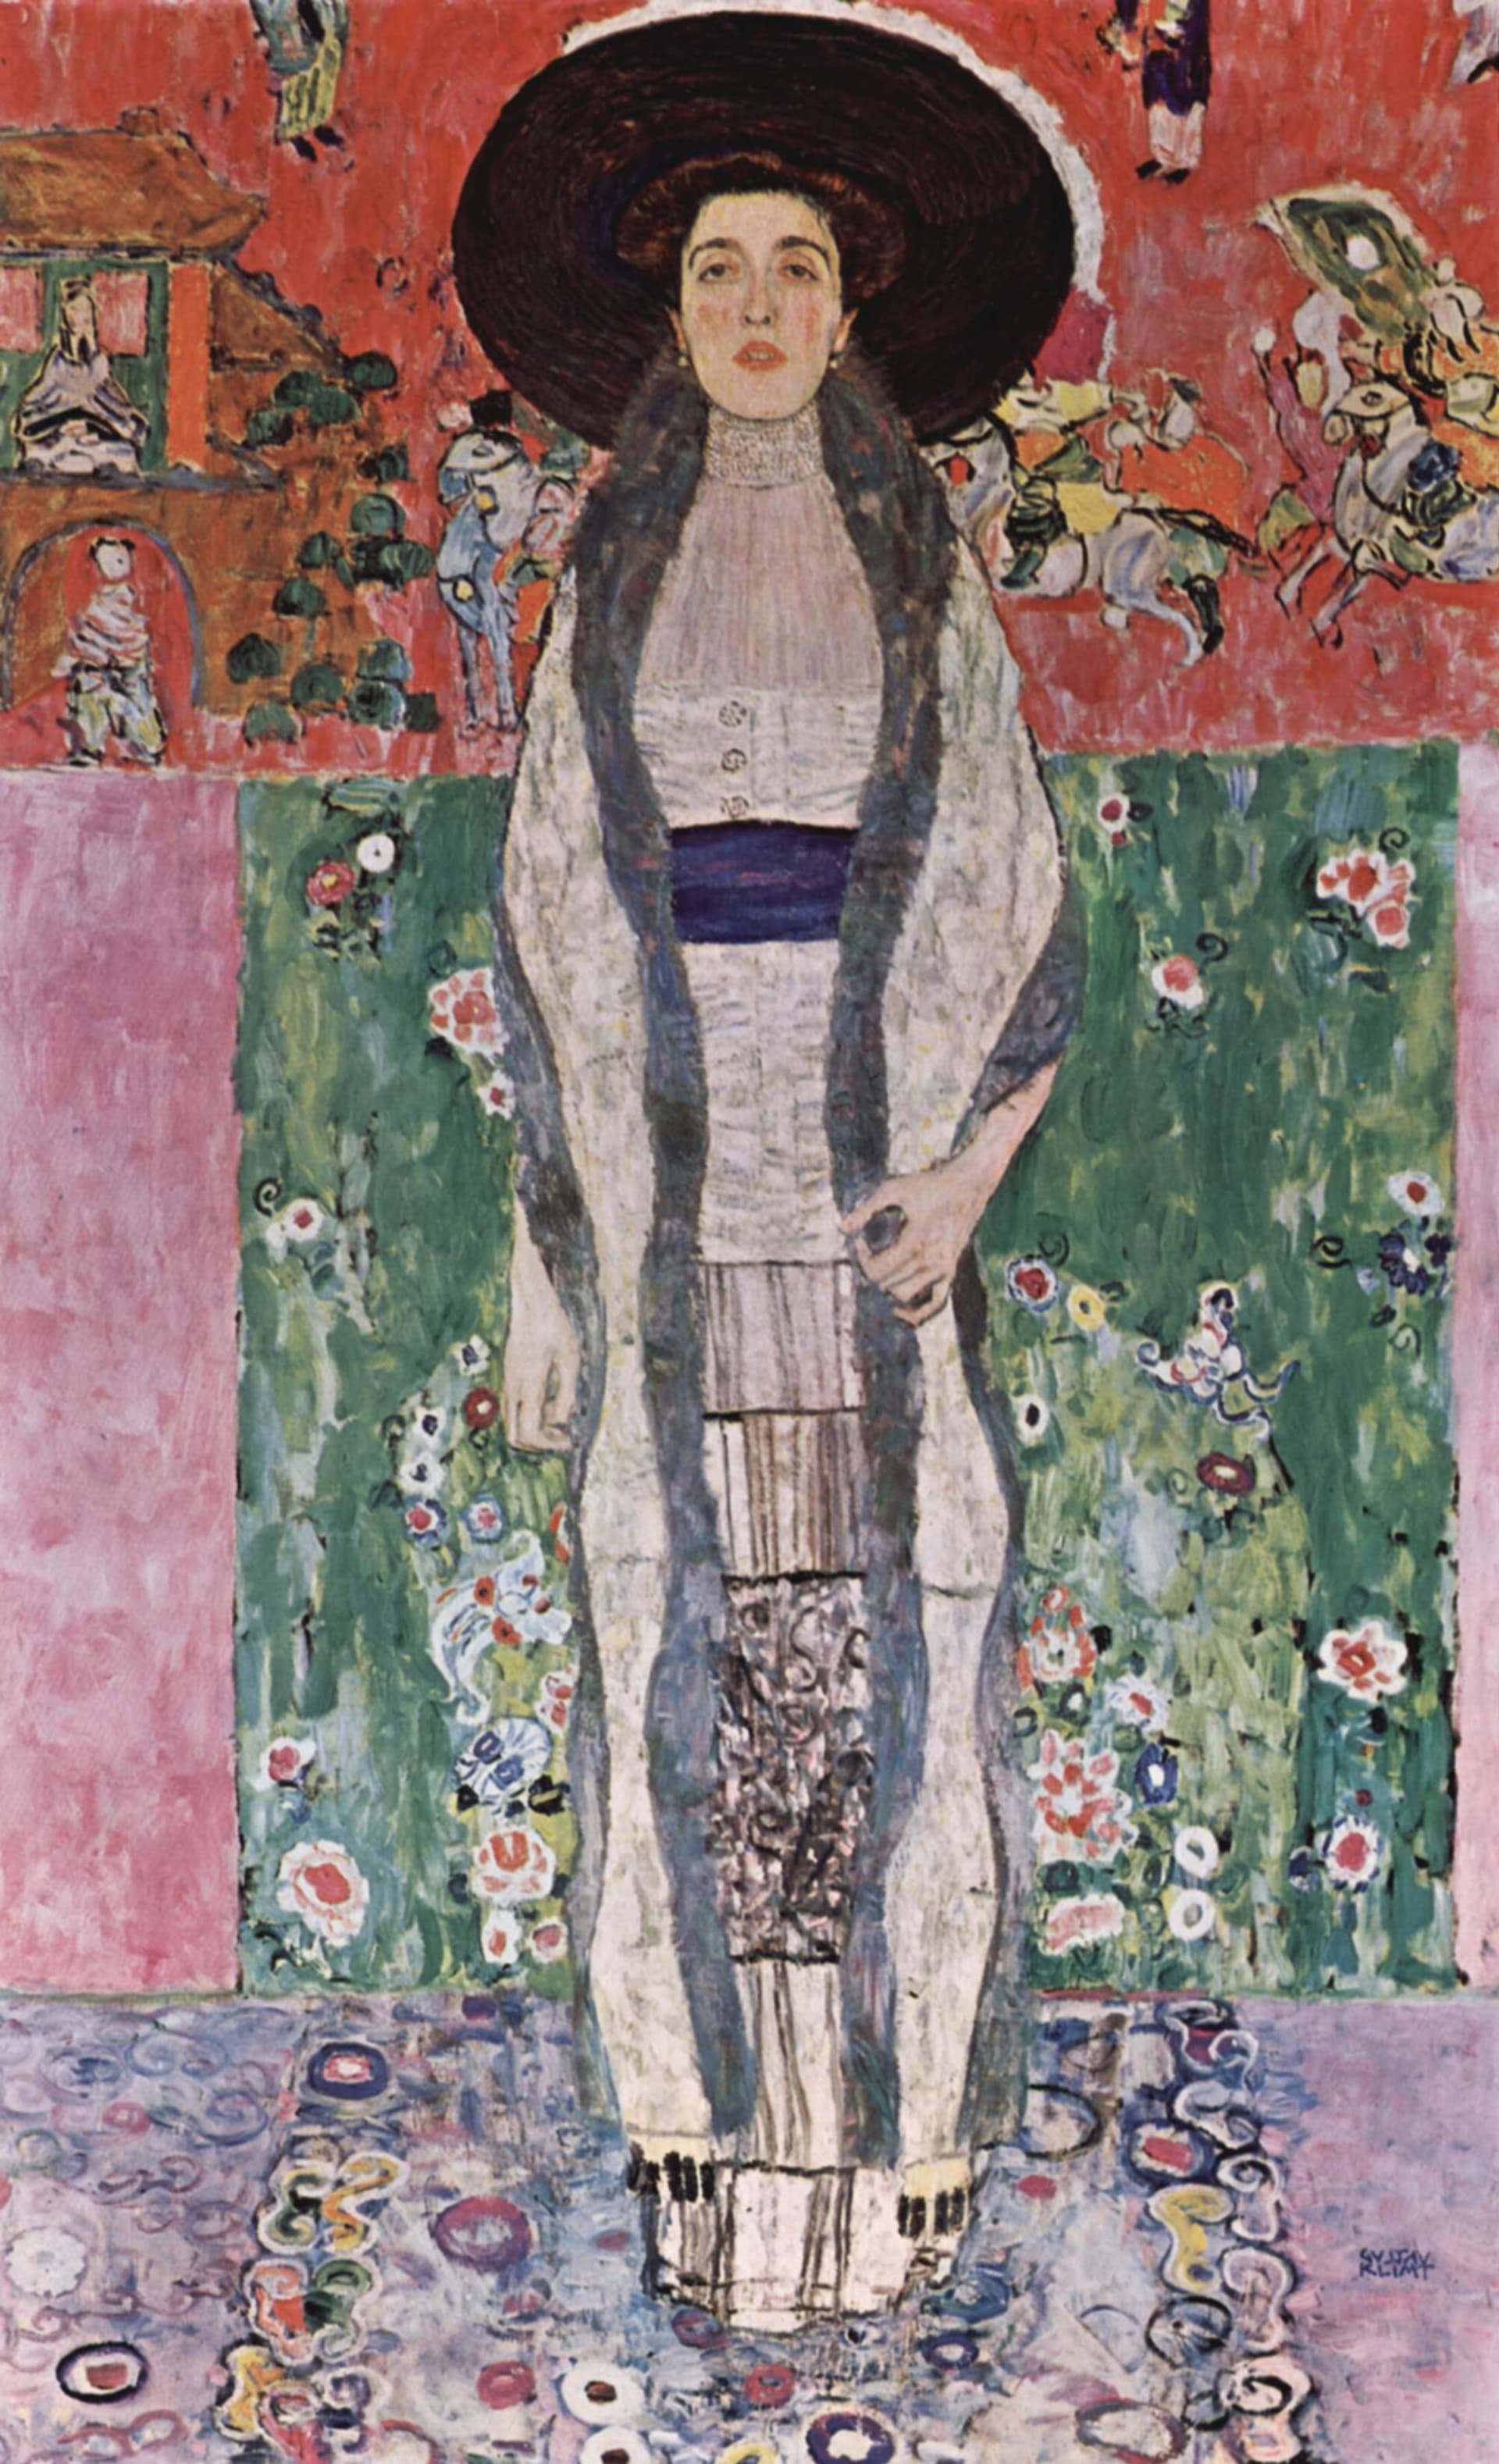 Titul nejdražšího portrétu prodaného v aukci pak držela Adele Bloch – Bauer II. od Gustava Klimta s cenou 87,9 milionu dolarů.